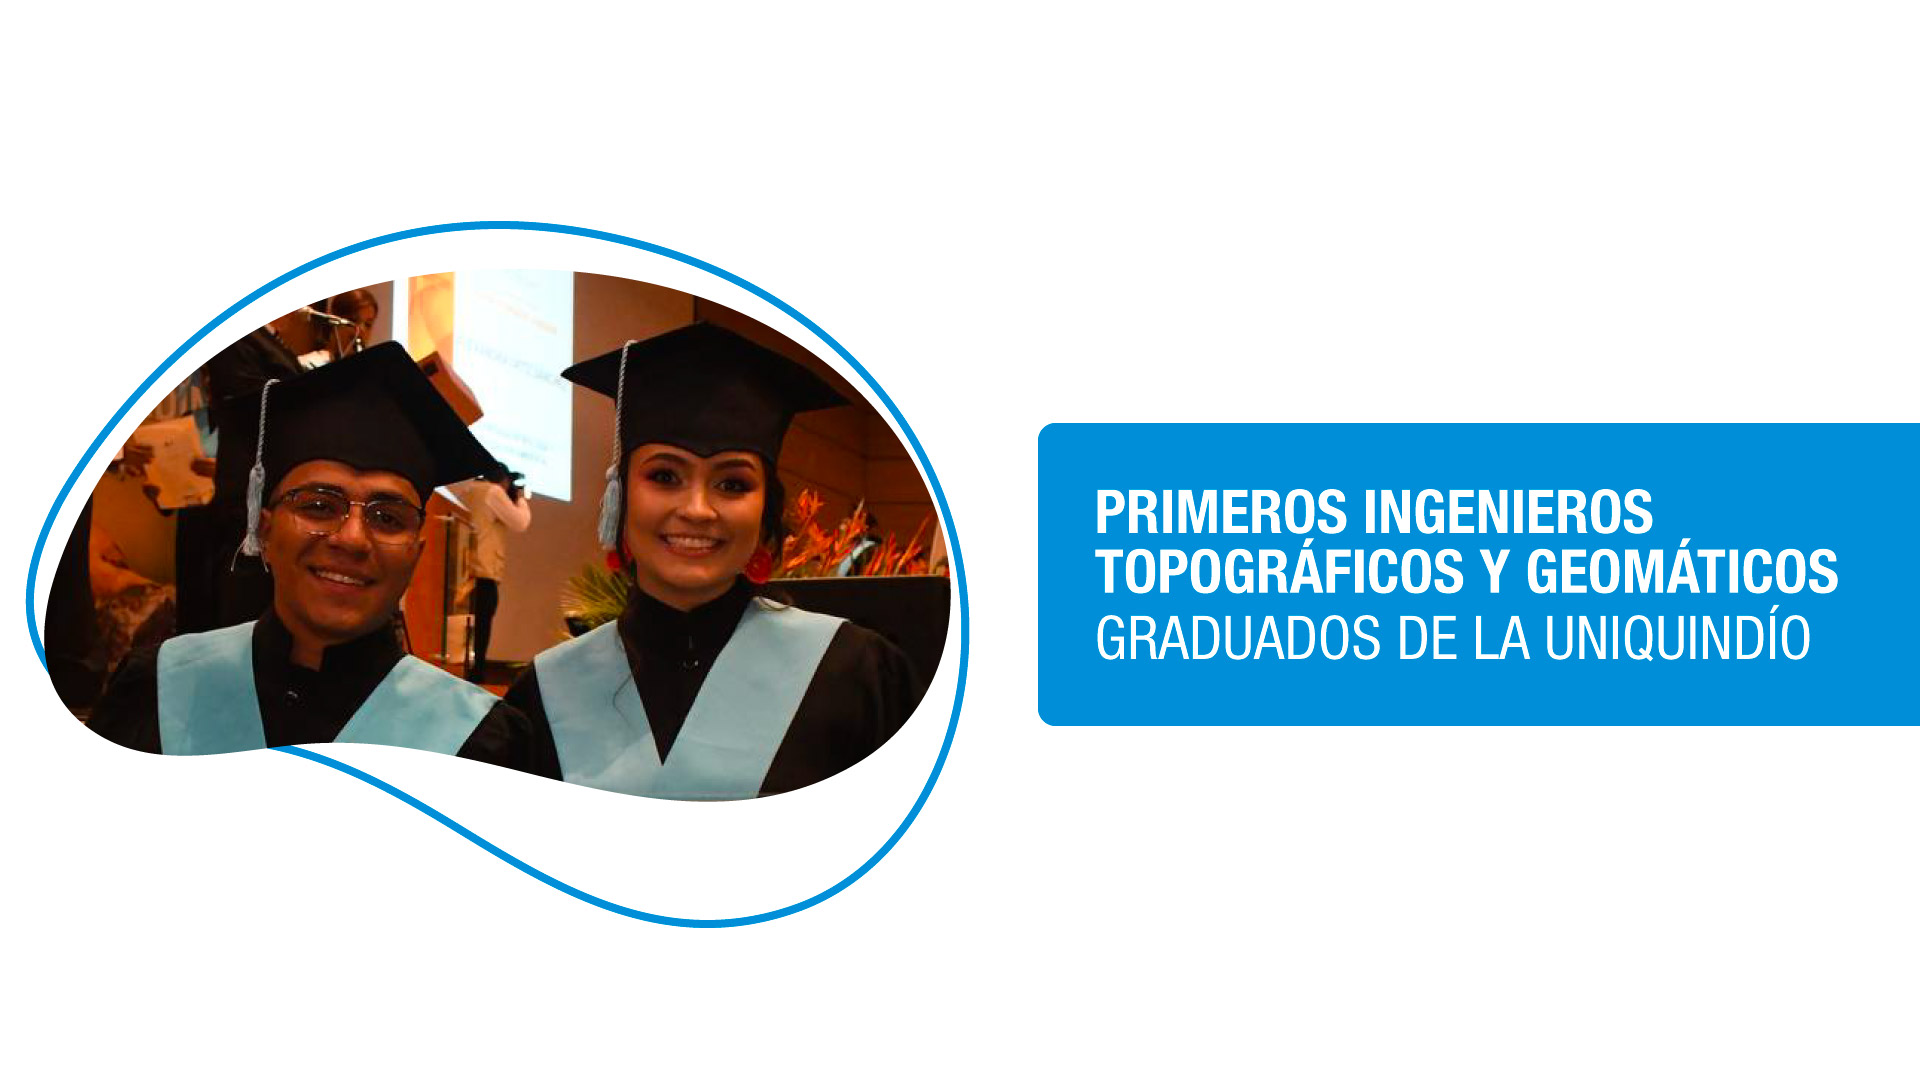 Hoy se graduaron los dos primeros Ingenieros topográficos y geomáticos de la Uniquindío, de la región y del país